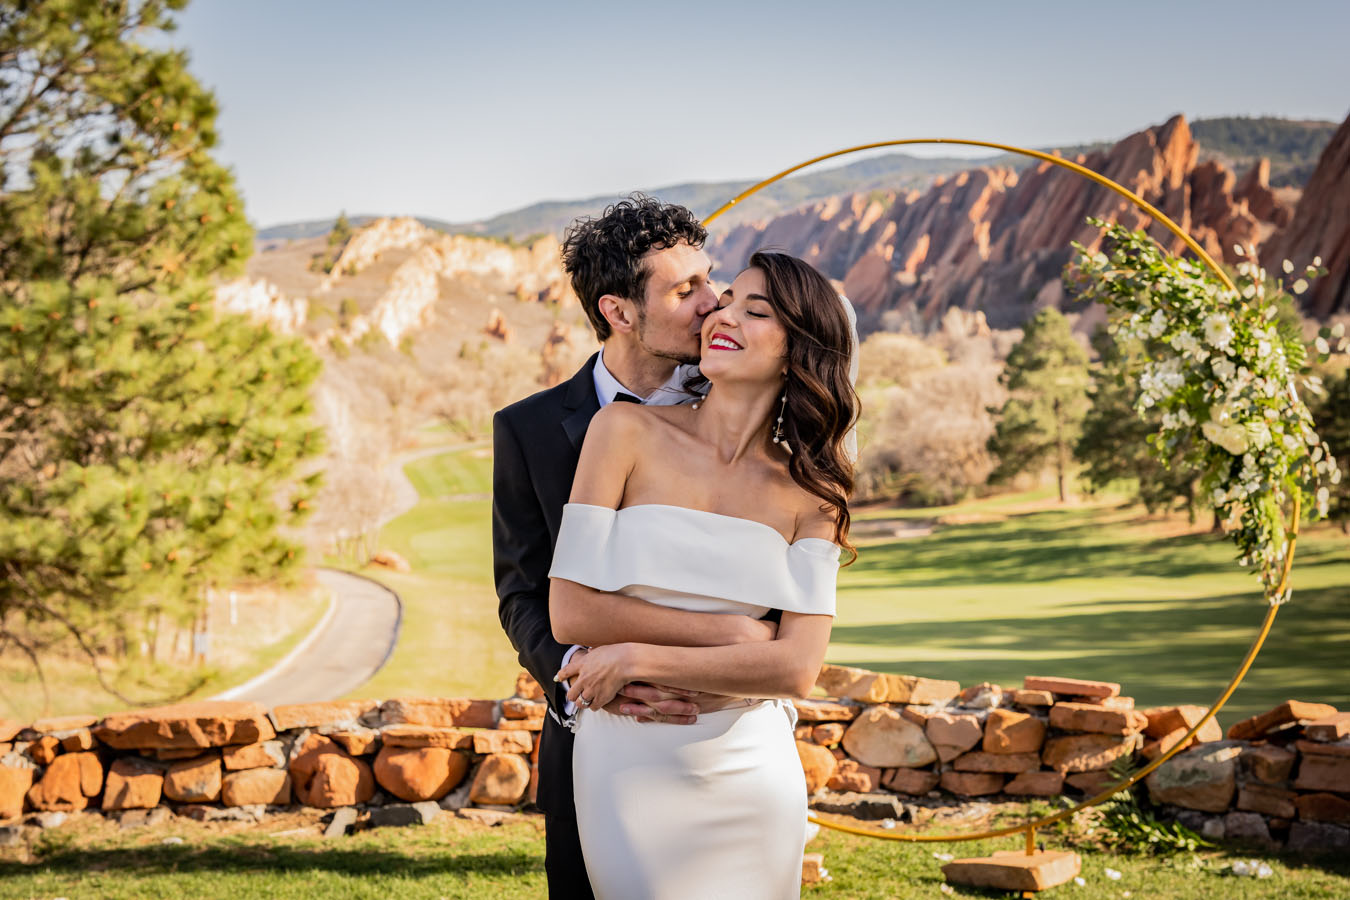 Kiss on the Brides Cheek at the Arrowhead Golf Club